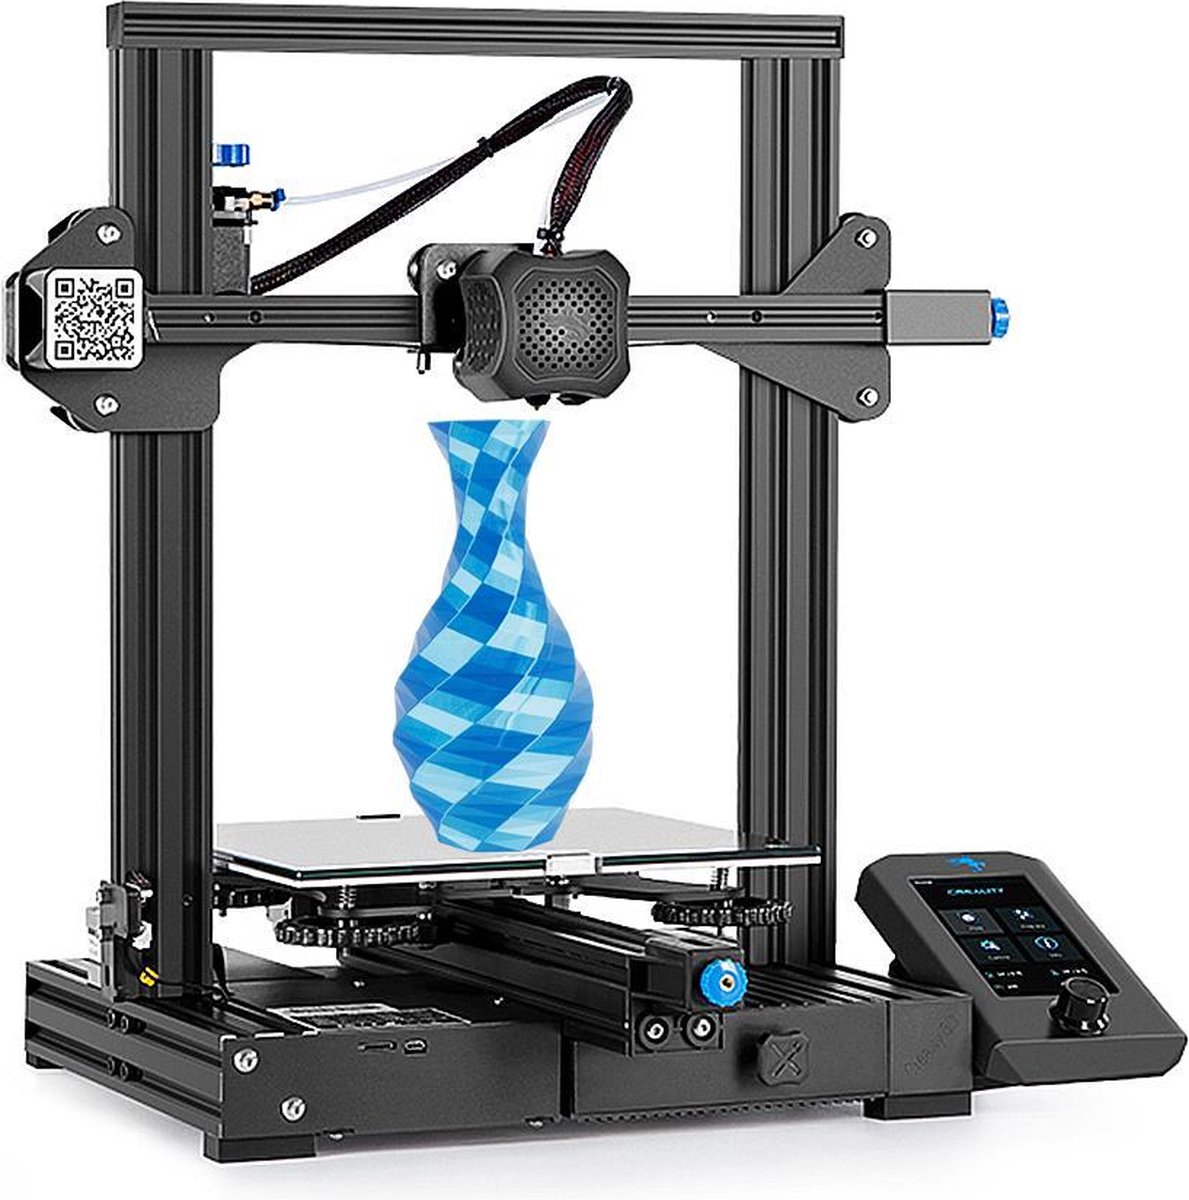 Creality 3D Ender-3 v2 - 3D printer